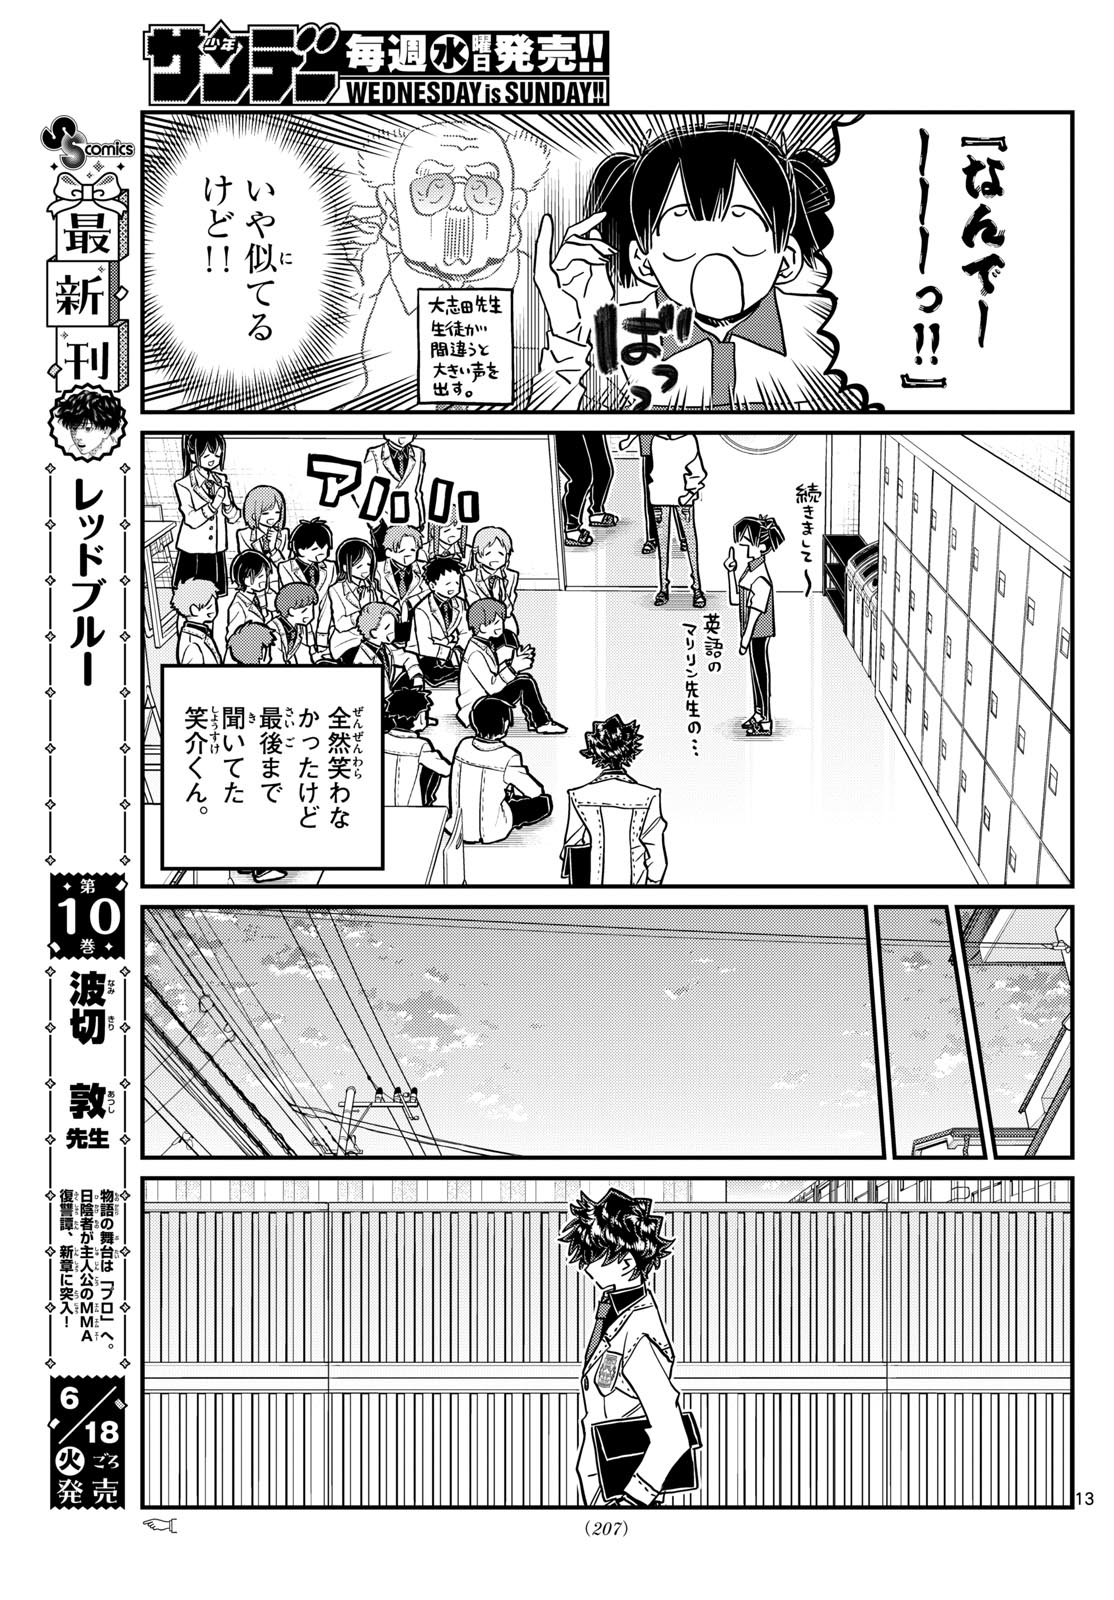 Komi-san wa Komyushou Desu - Chapter 460 - Page 13